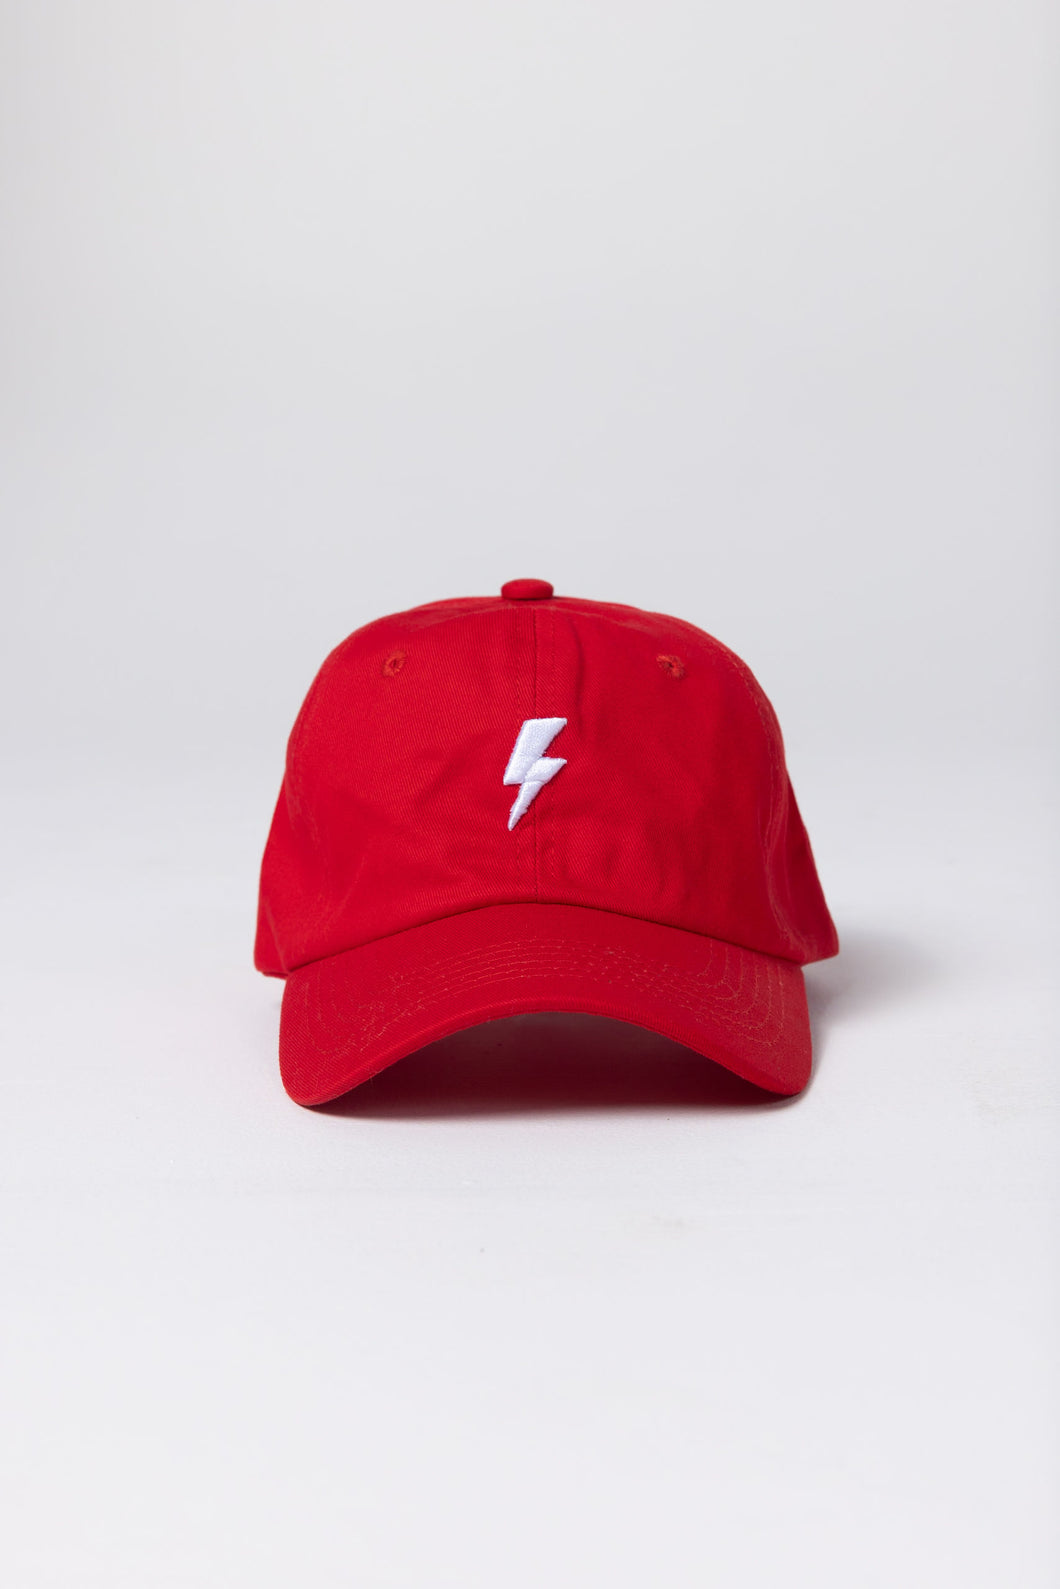 Lightning Bolt Cap - Red